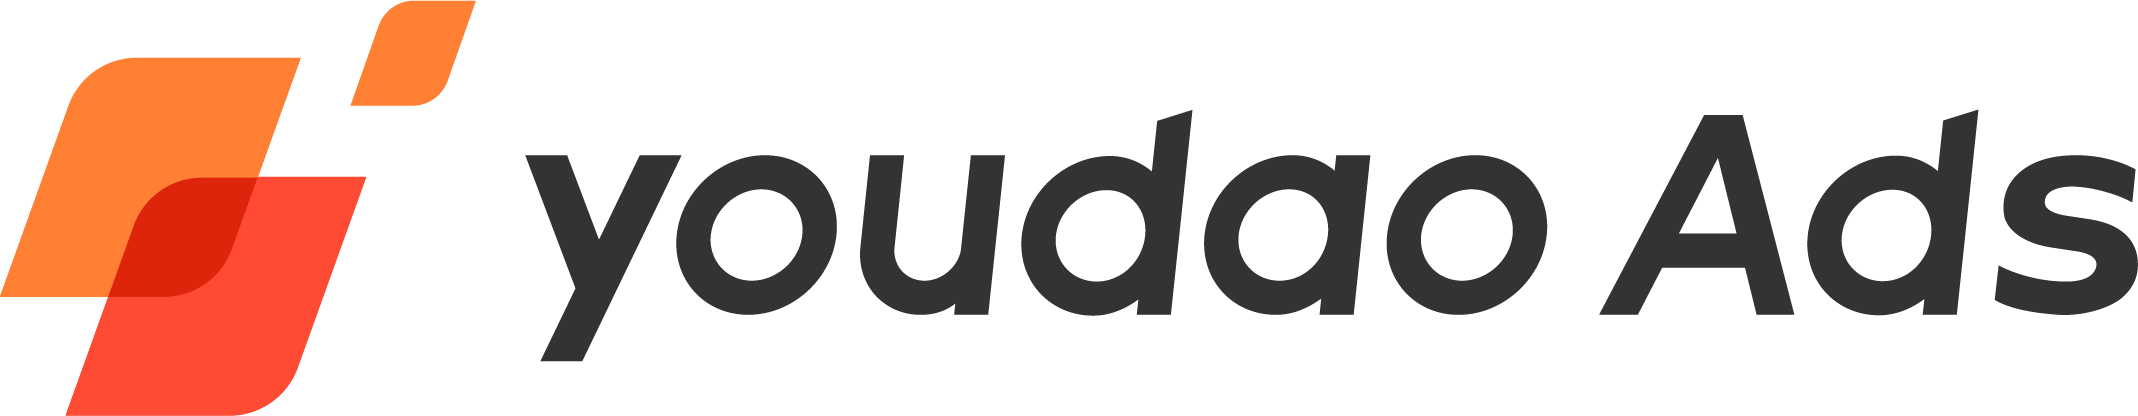 youdao_logo